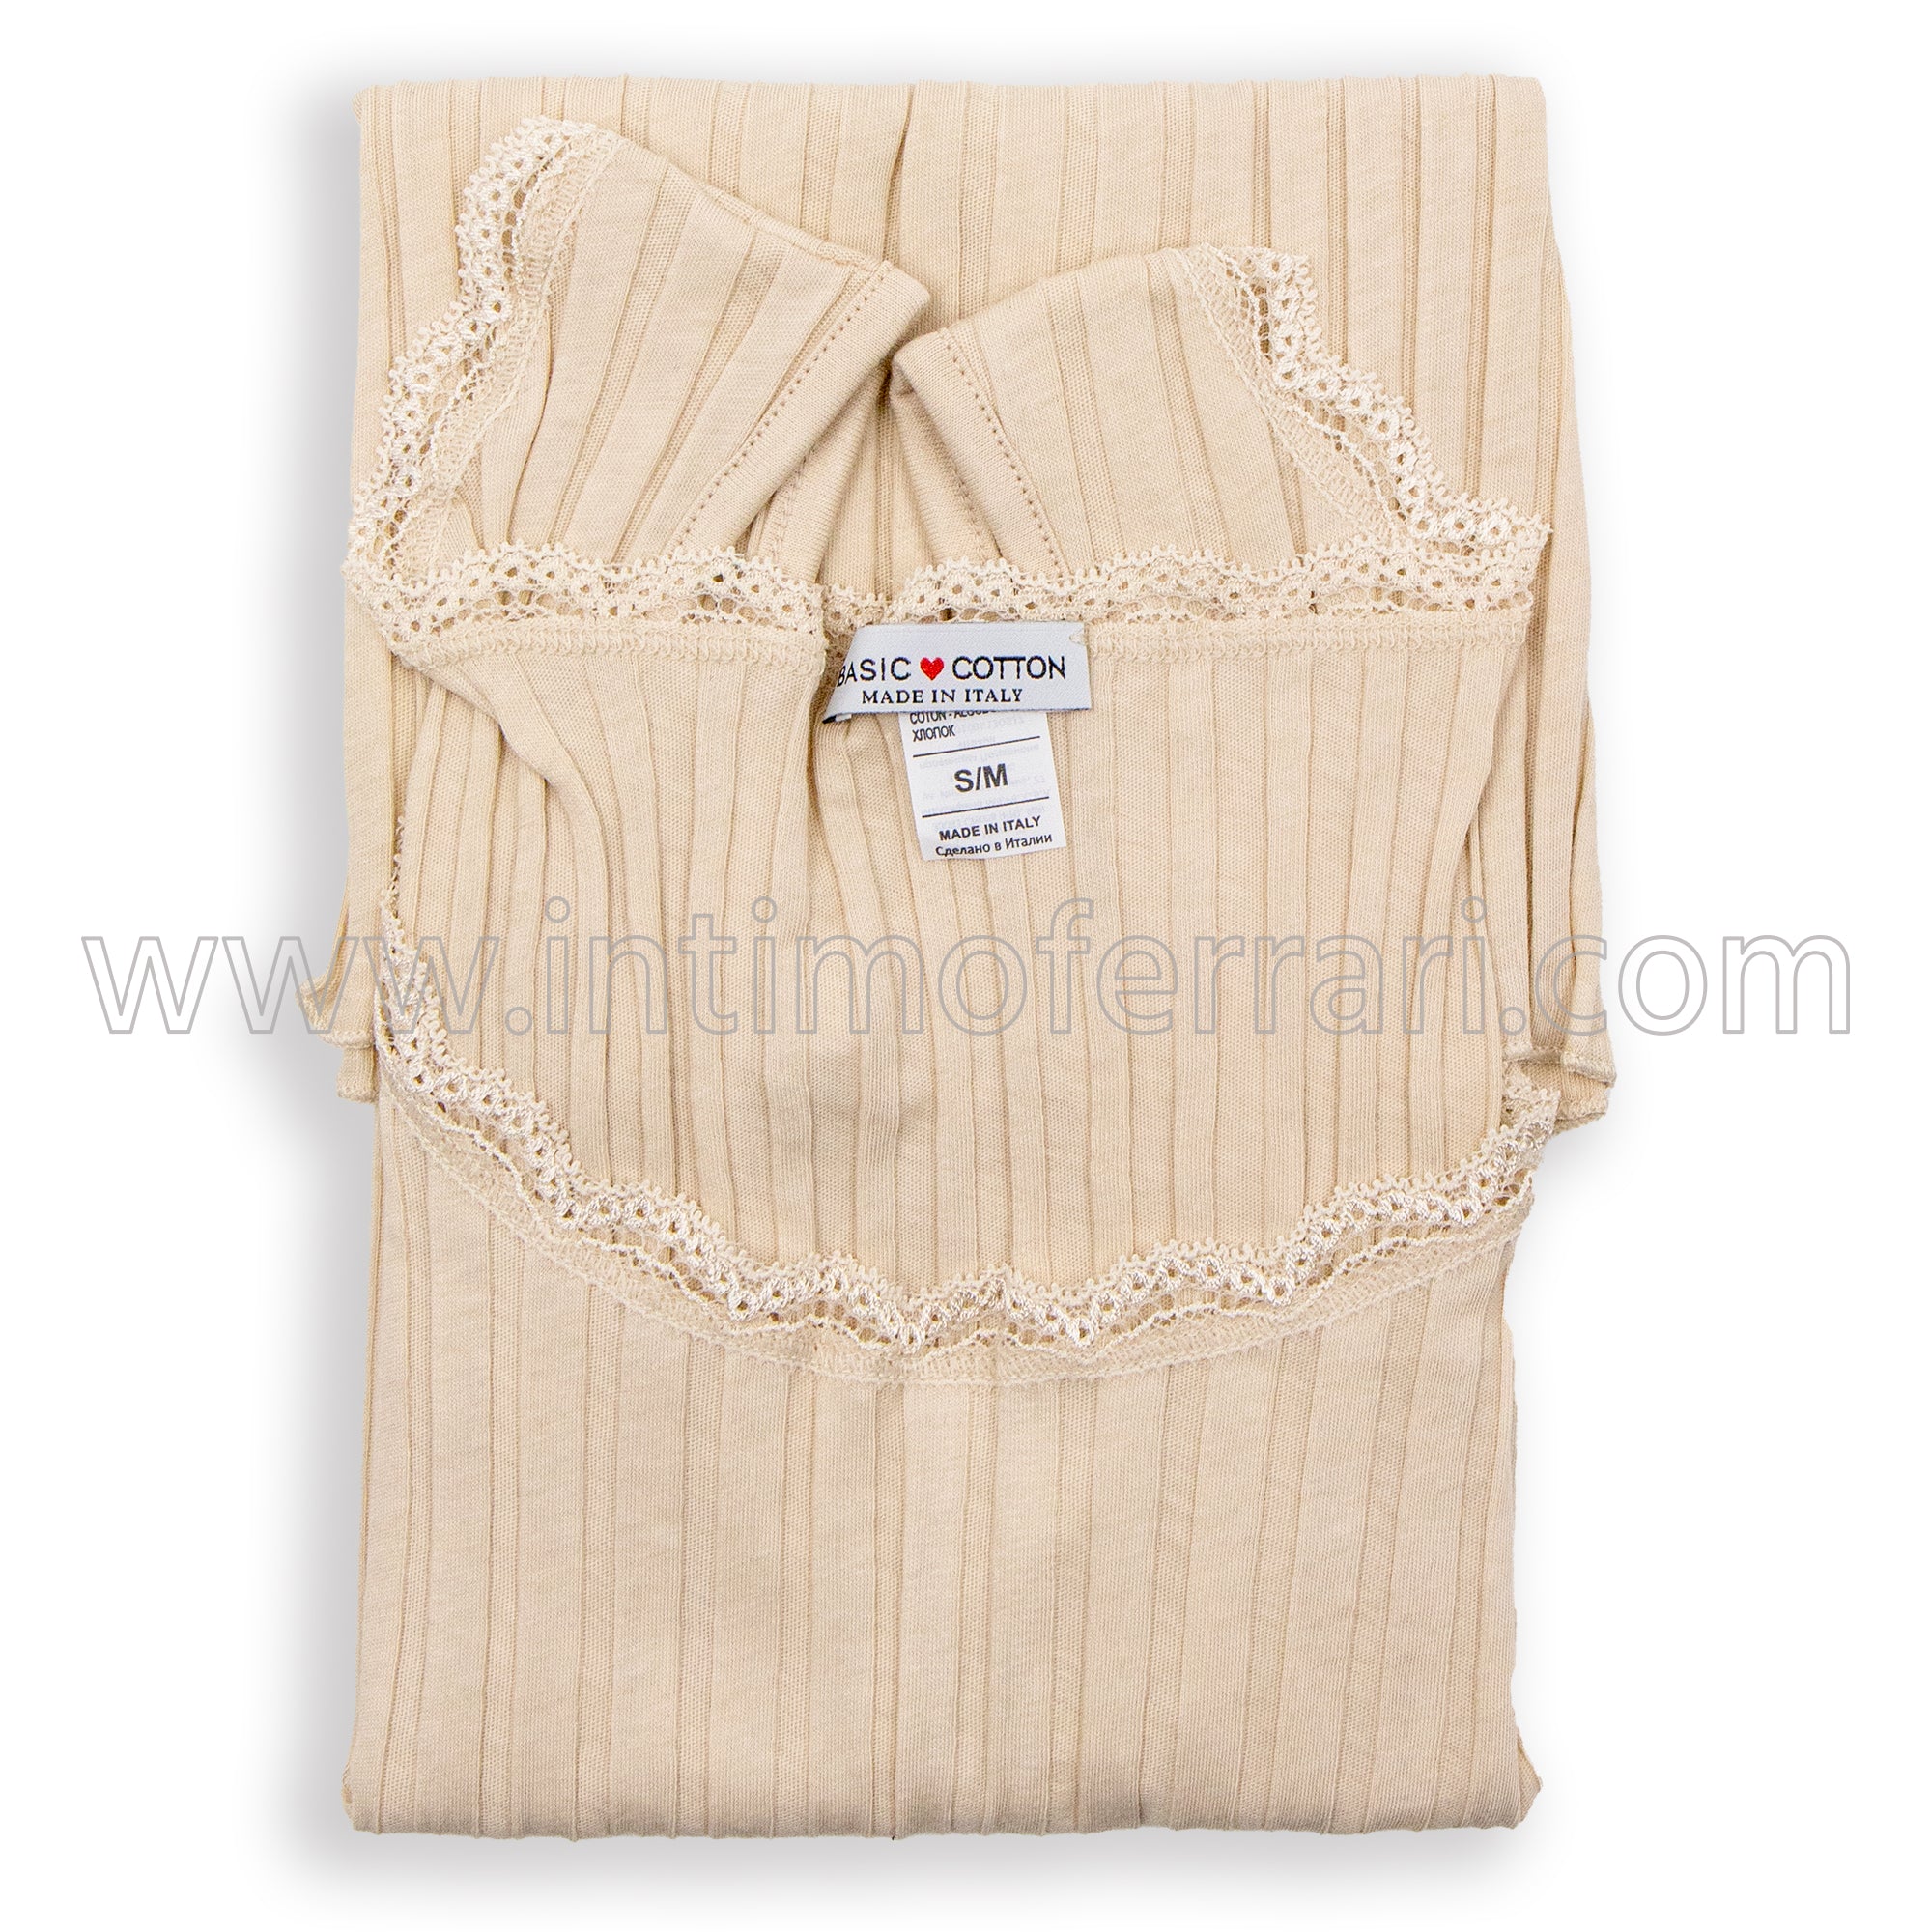 Canottiera a spalla larga in cotone Basic Cotton 6510